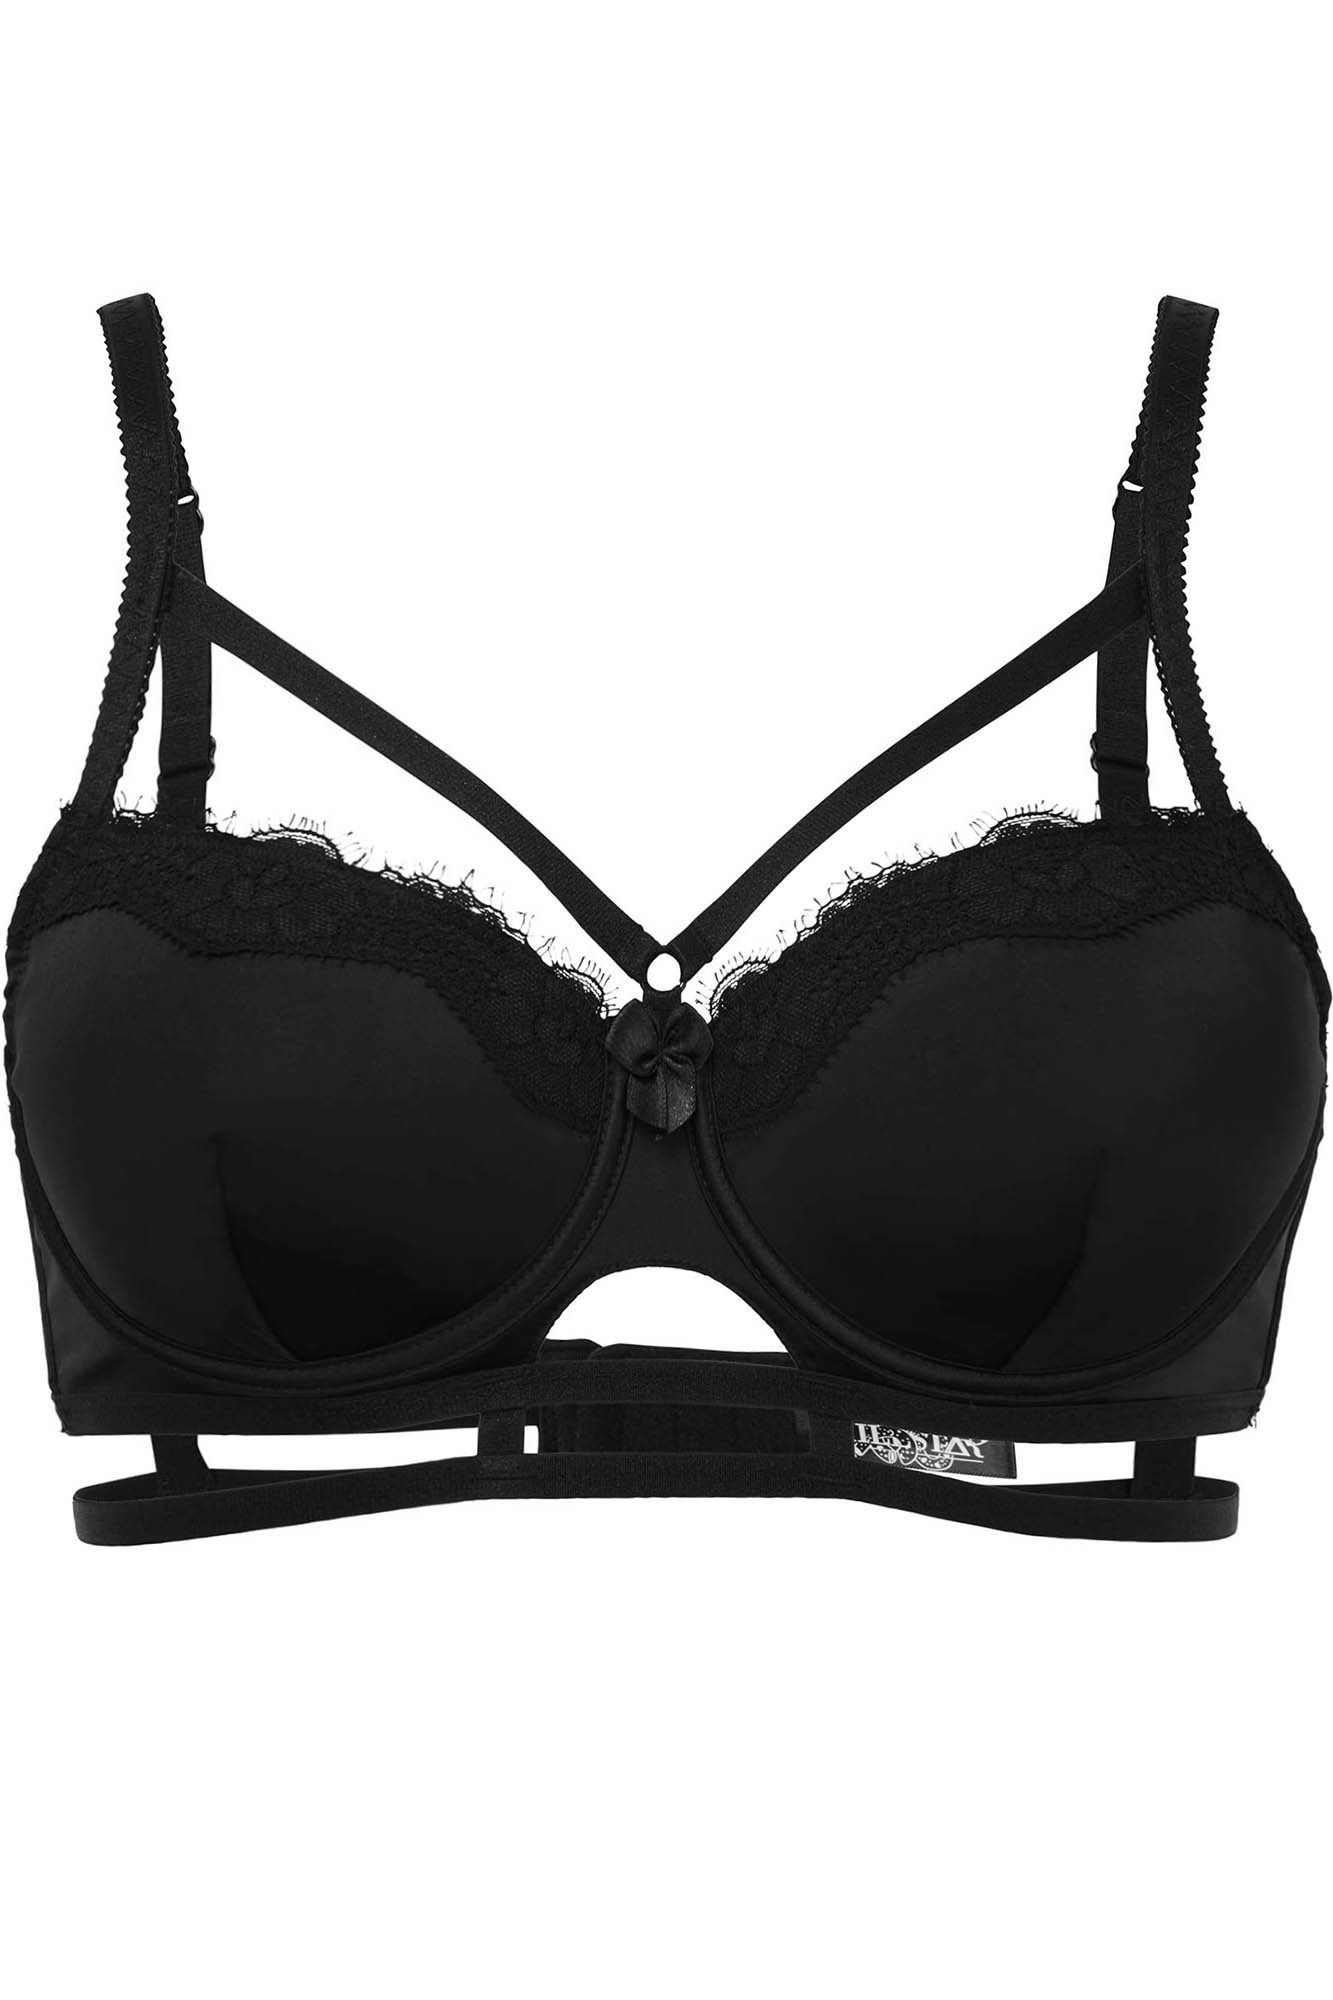 bra for women KILLSTAR - Anity Bondage - Black - KSRA007705